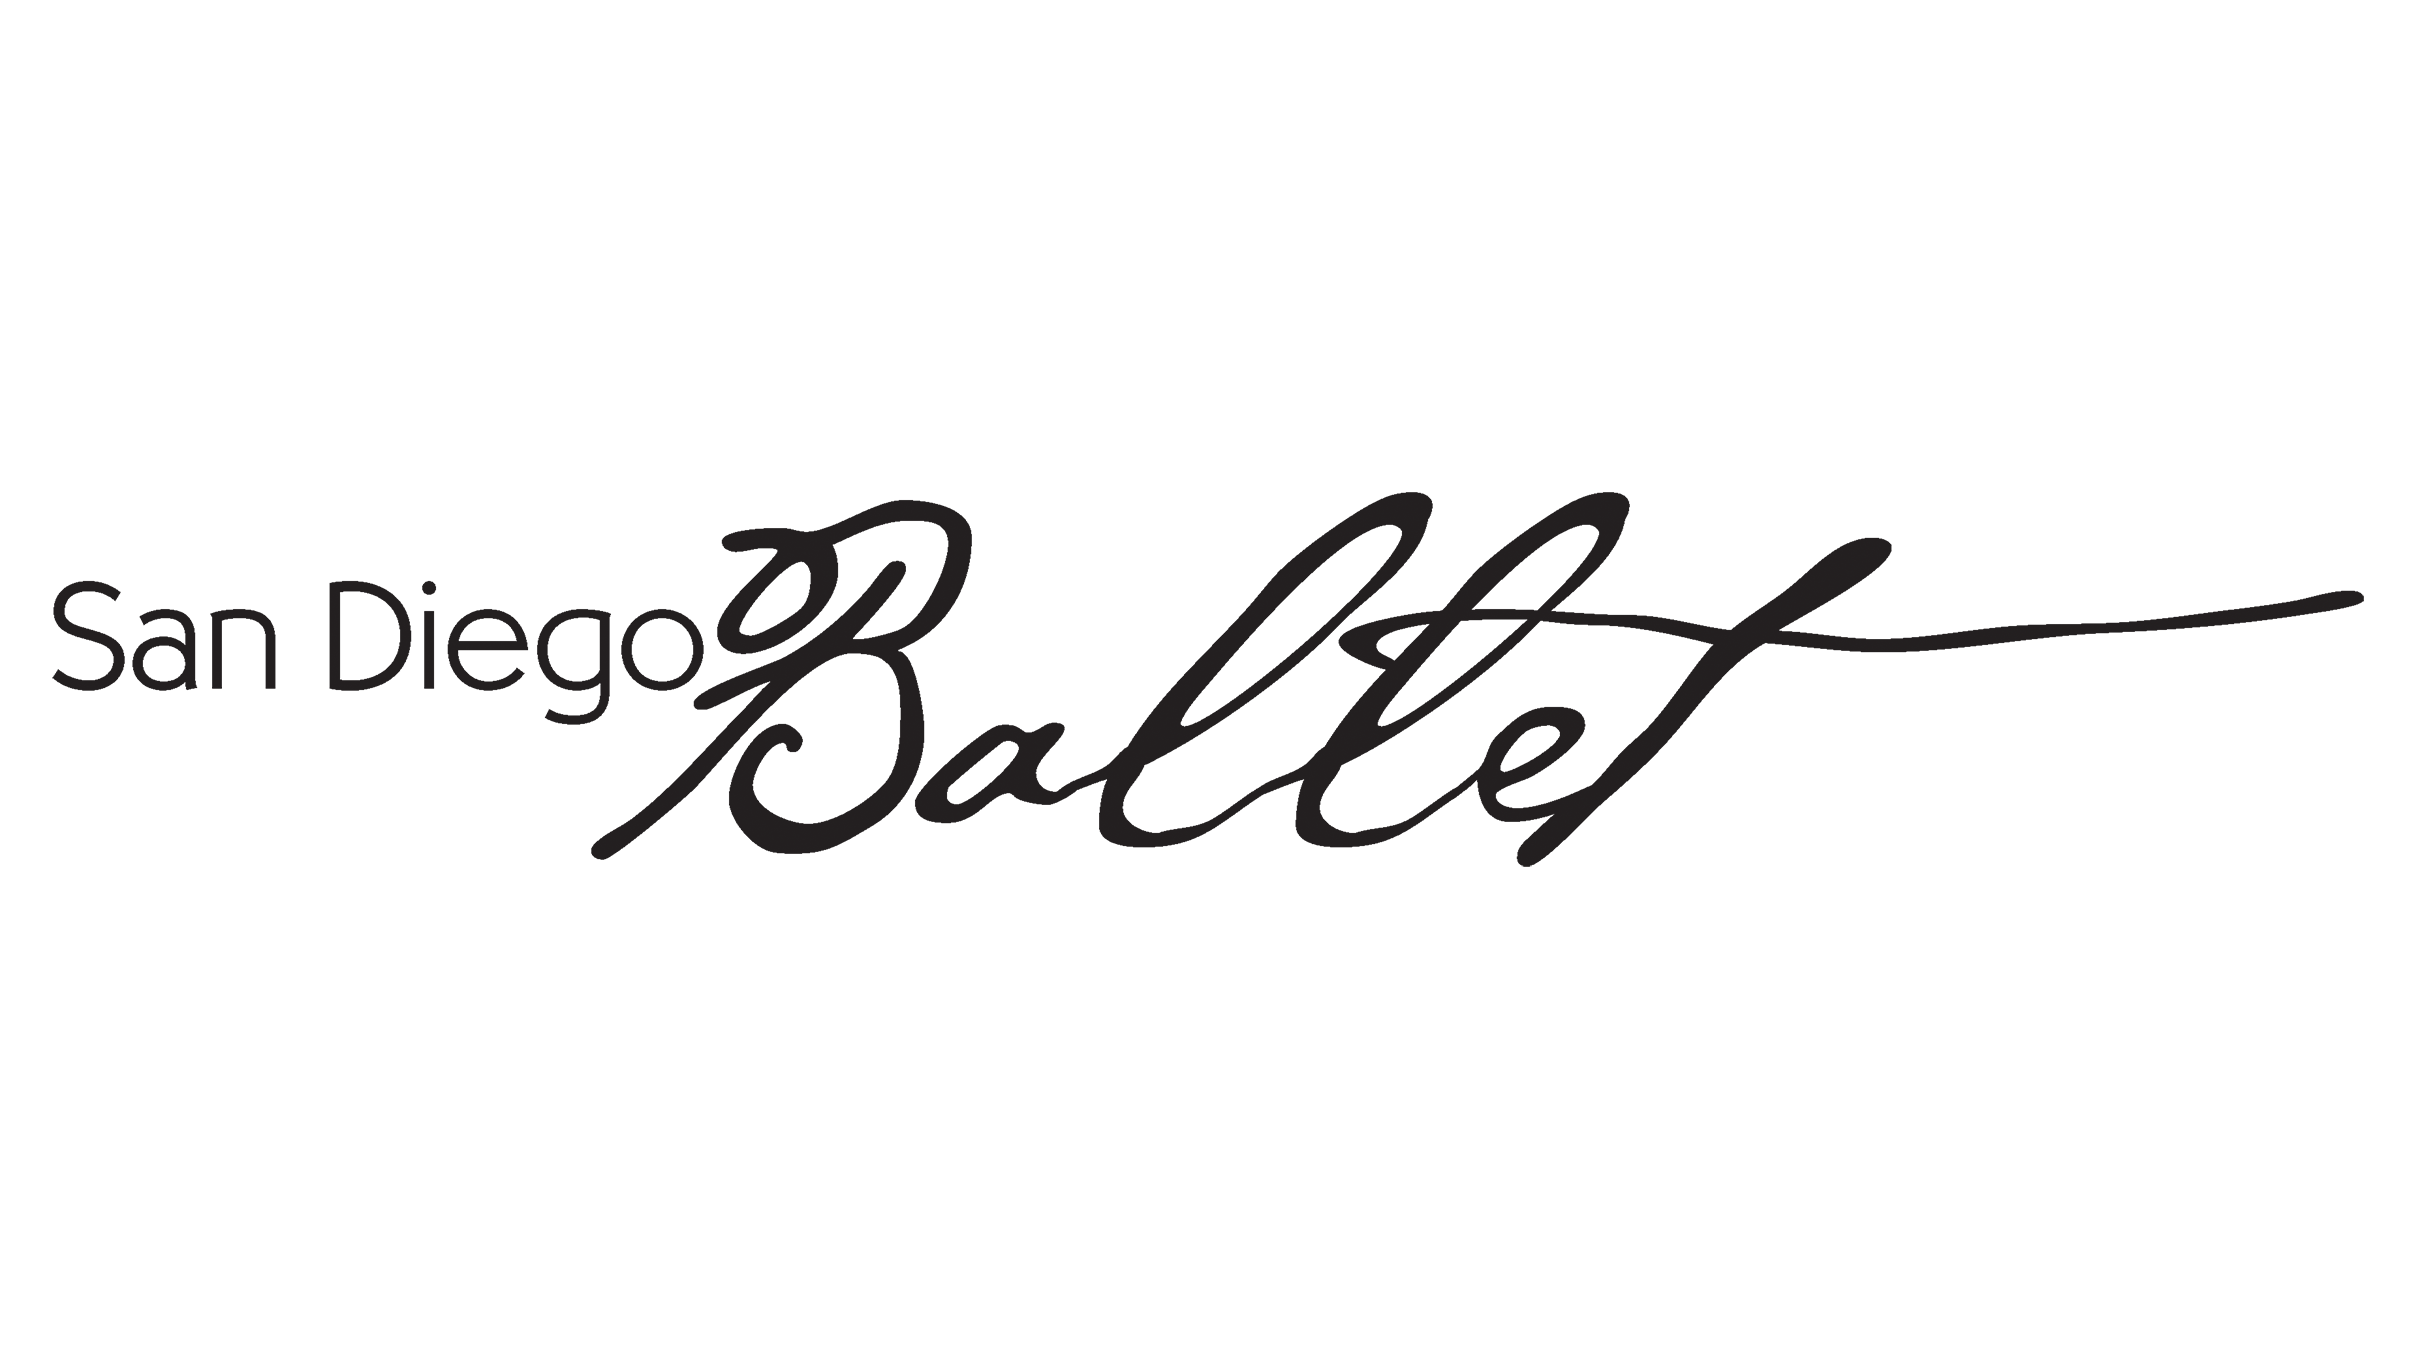 San Diego Ballet logo